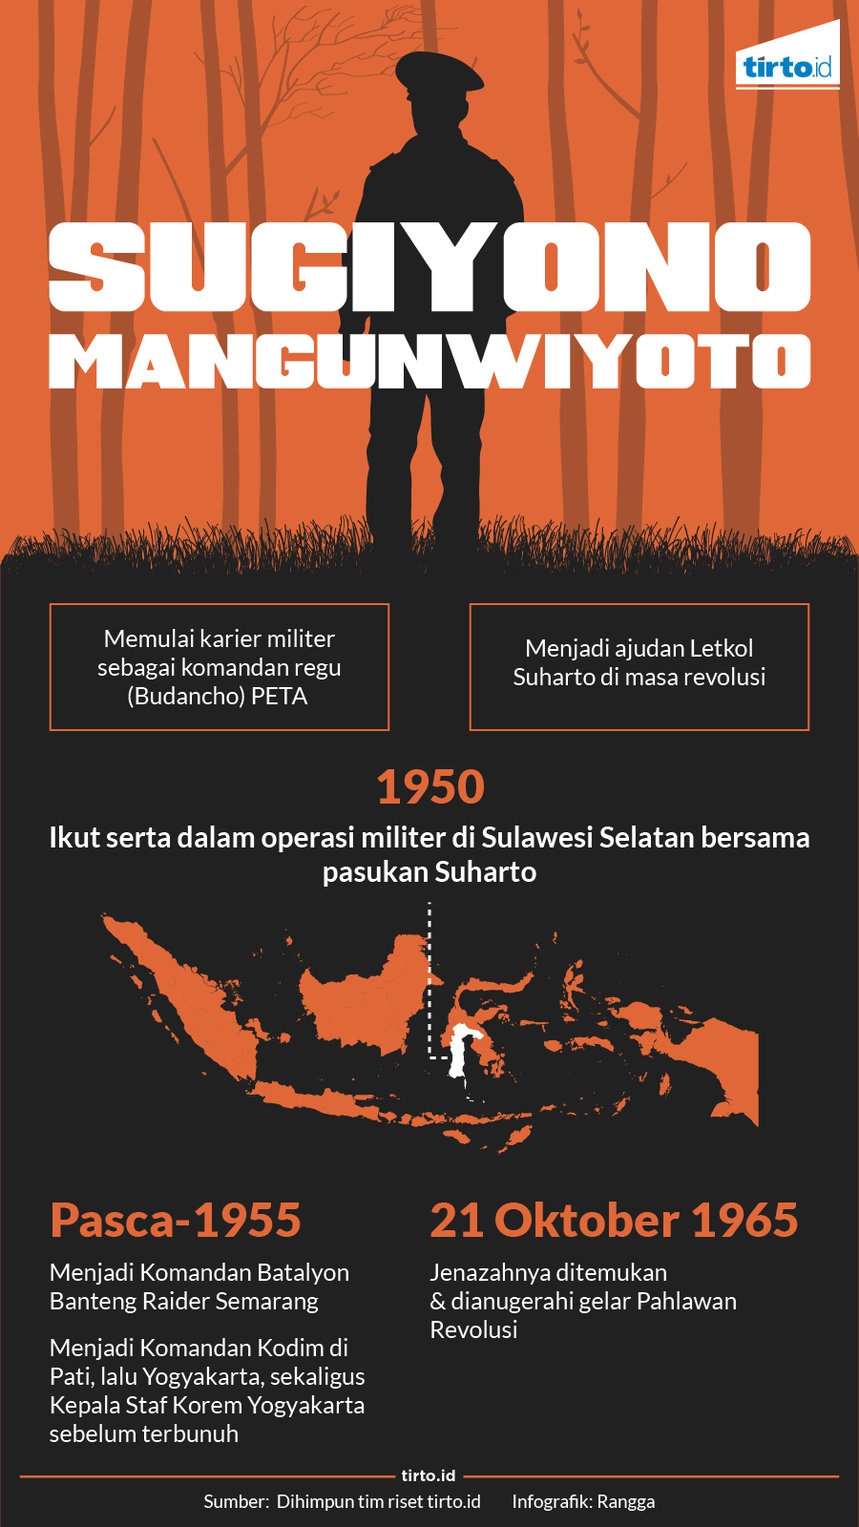 Kolonel Sugijono, Pahlawan Revolusi dari Yogyakarta